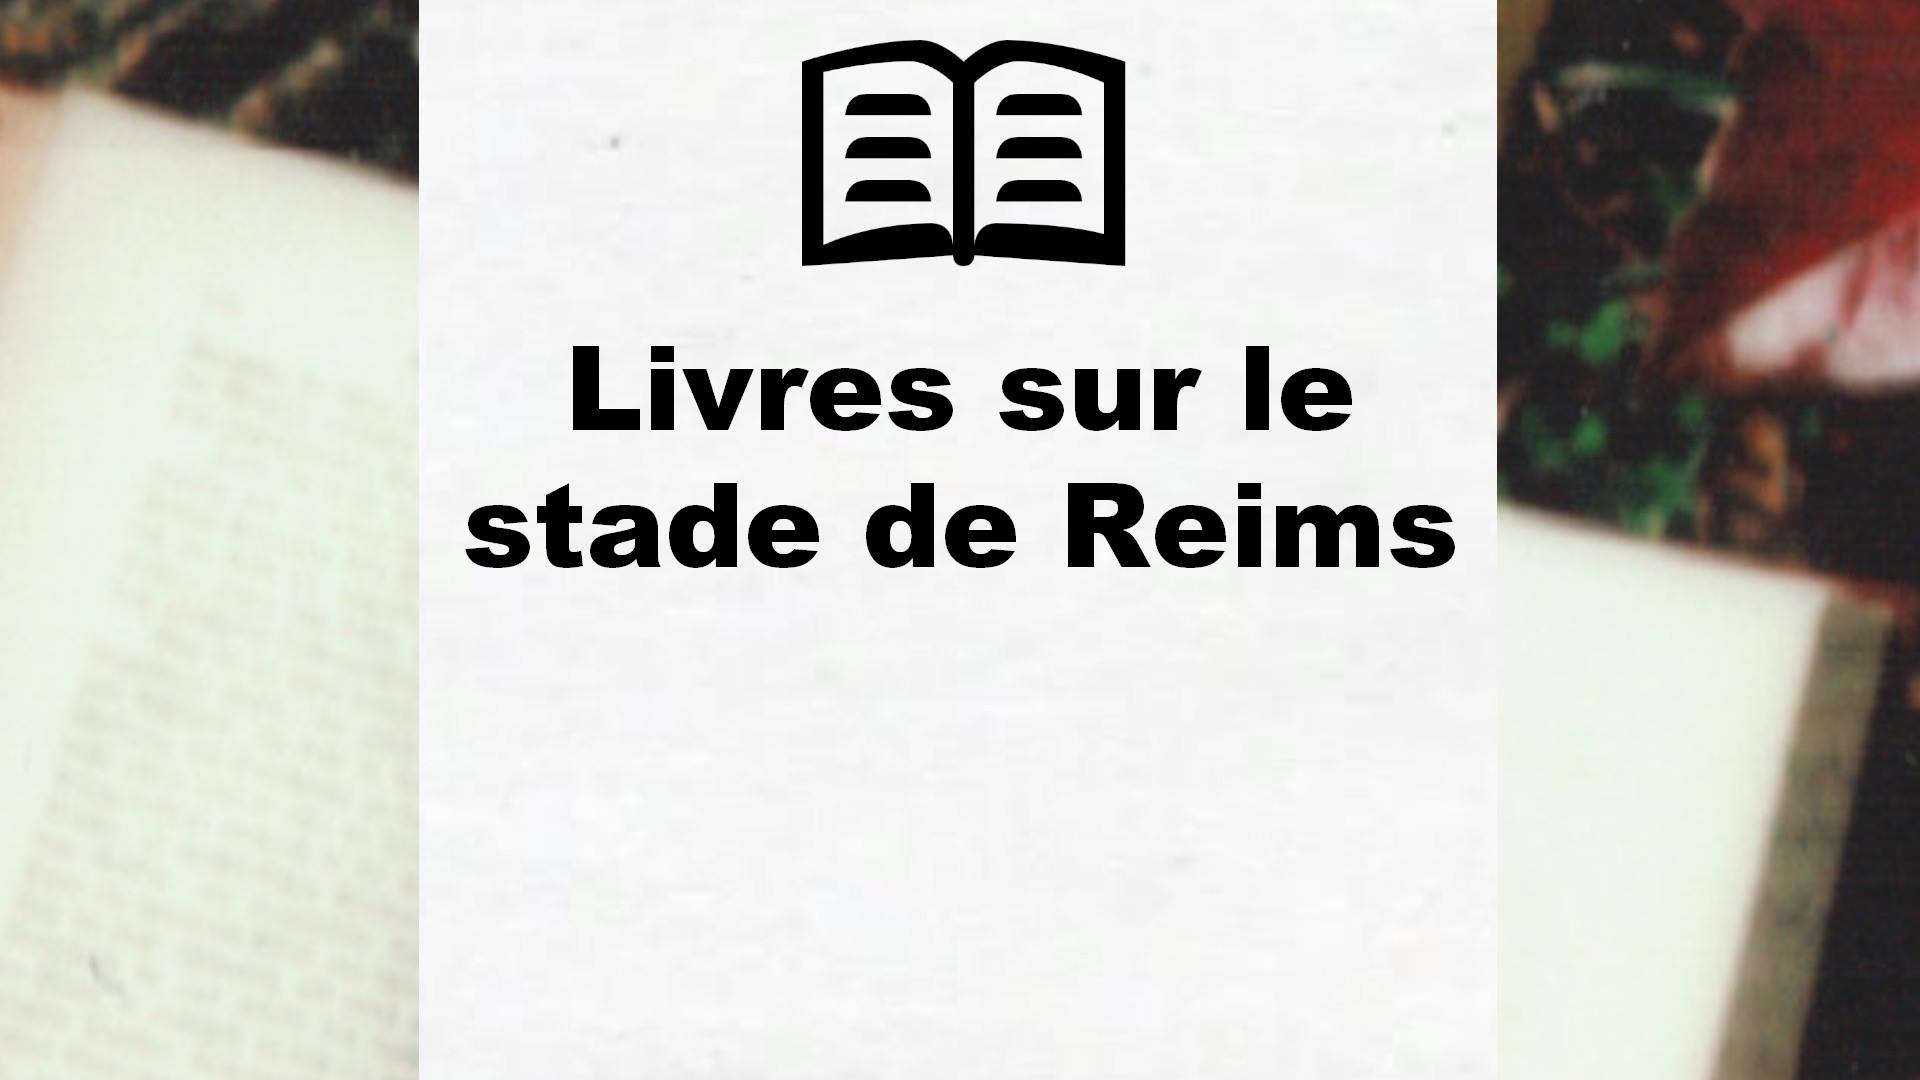 Livres sur le stade de Reims